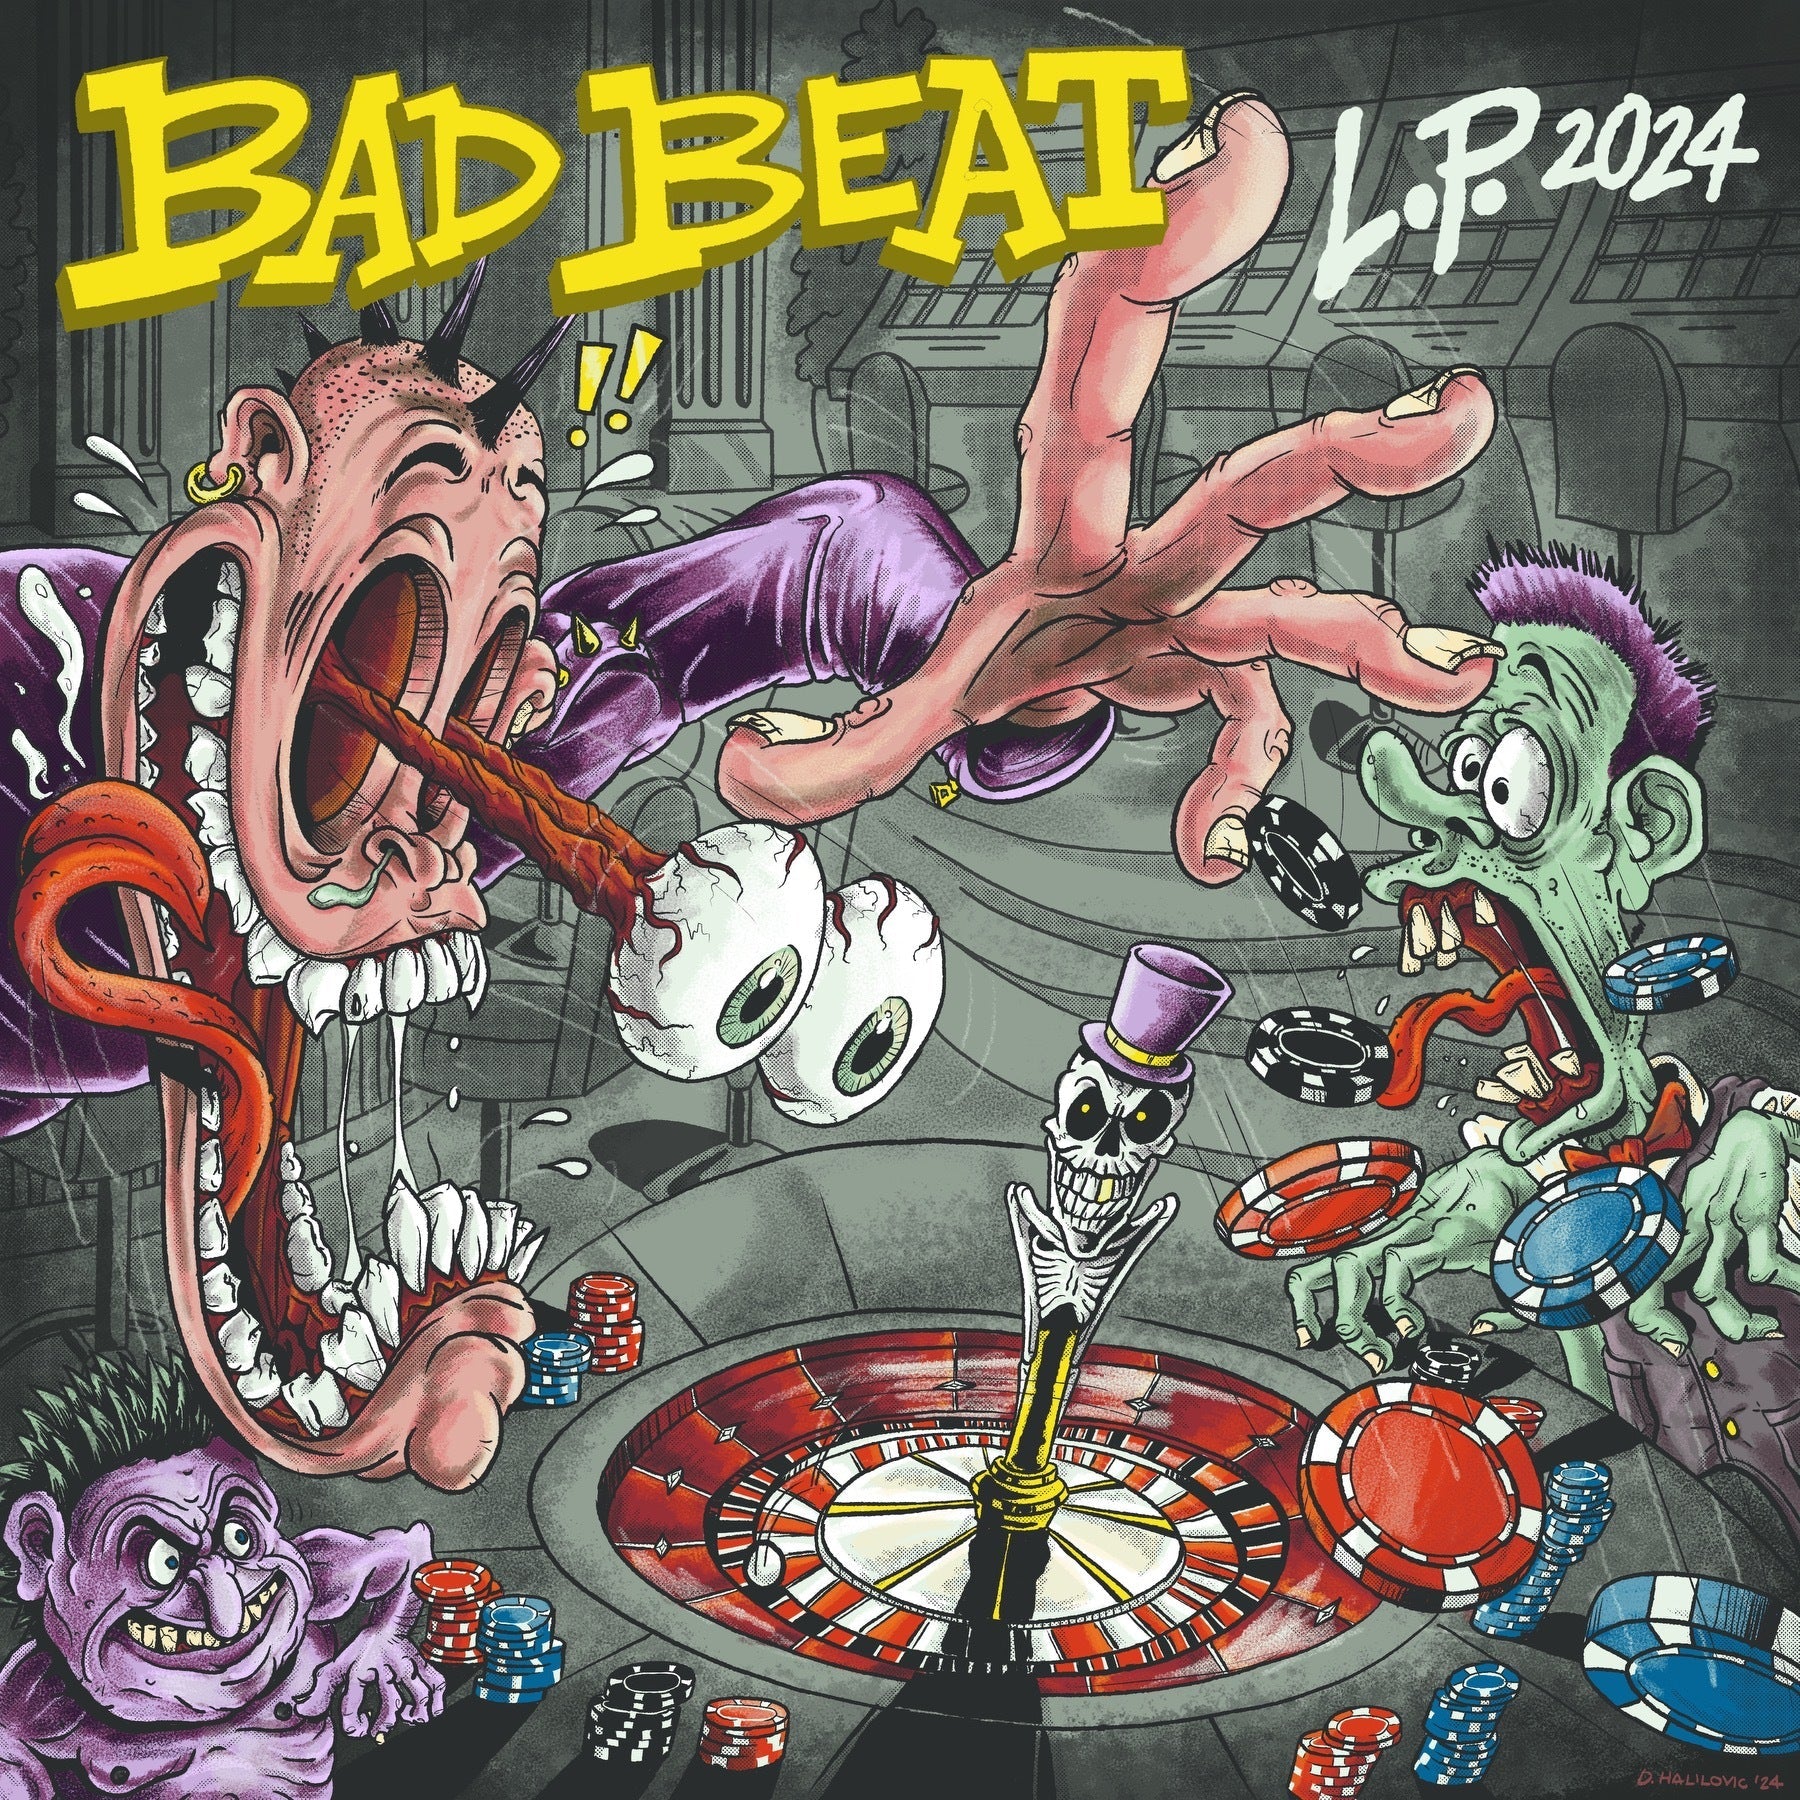 BAD BEAT "L.P. 2024" LP